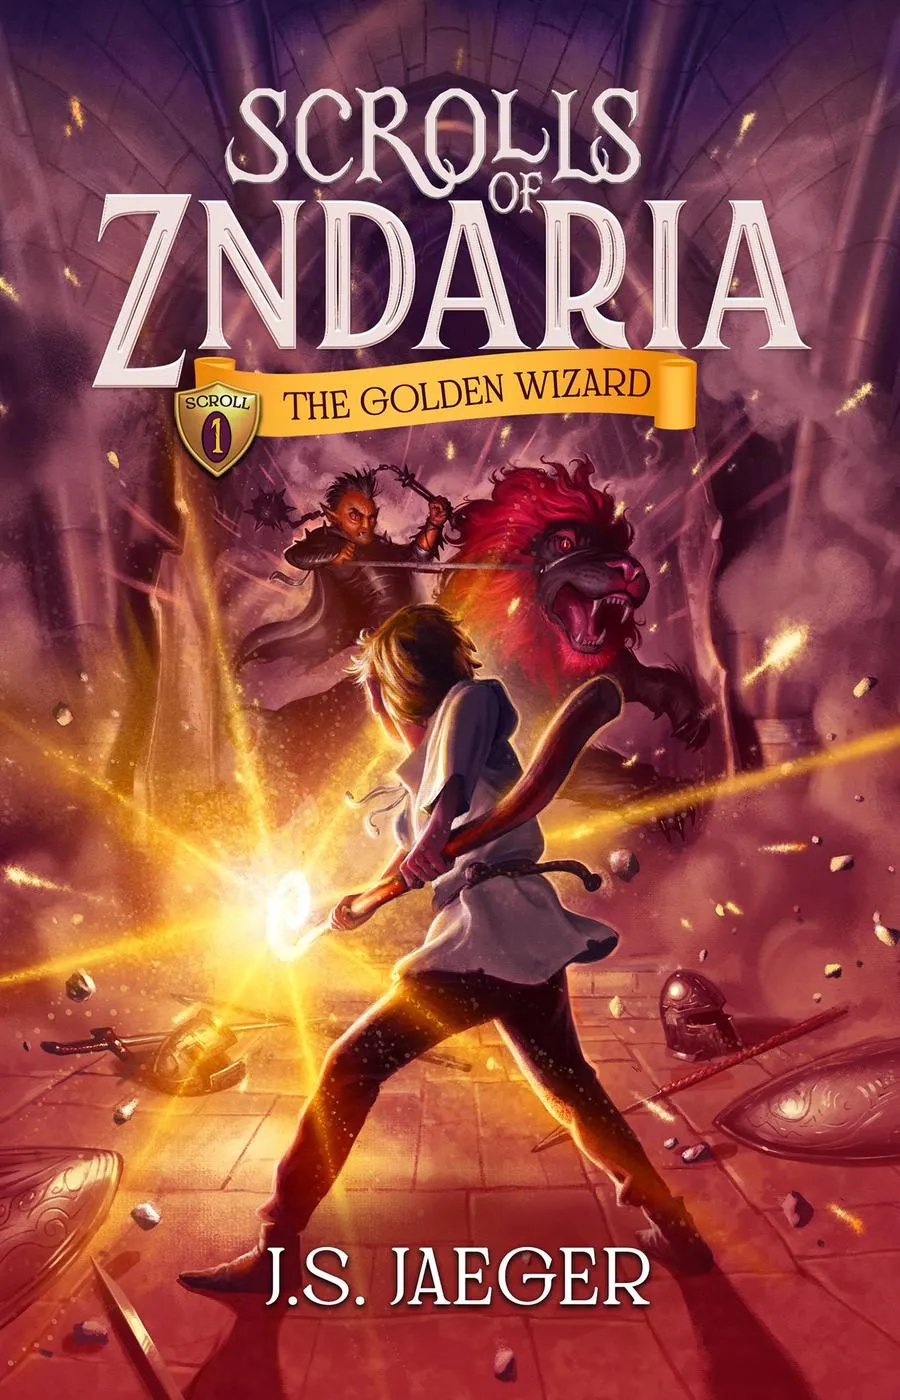 The Golden Wizard (Scrolls of Zndaria #1)